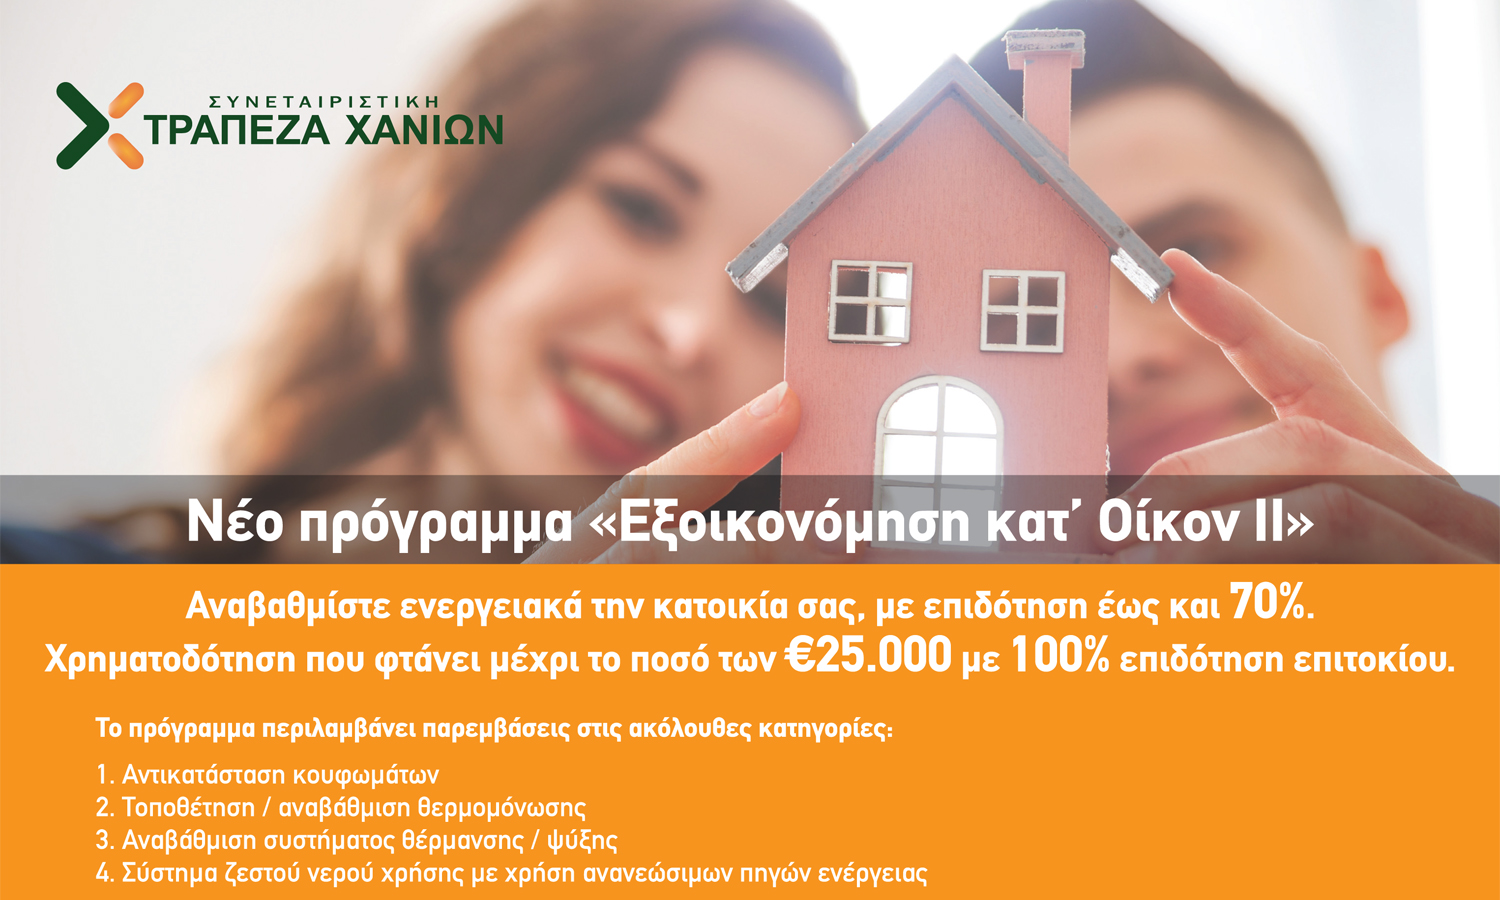 Από σήμερα οι αιτήσεις στην Κρήτη για το «Εξοικονομώ κατ΄ οίκον ΙΙ» με την συμμετοχή της Τράπεζας Χανίων